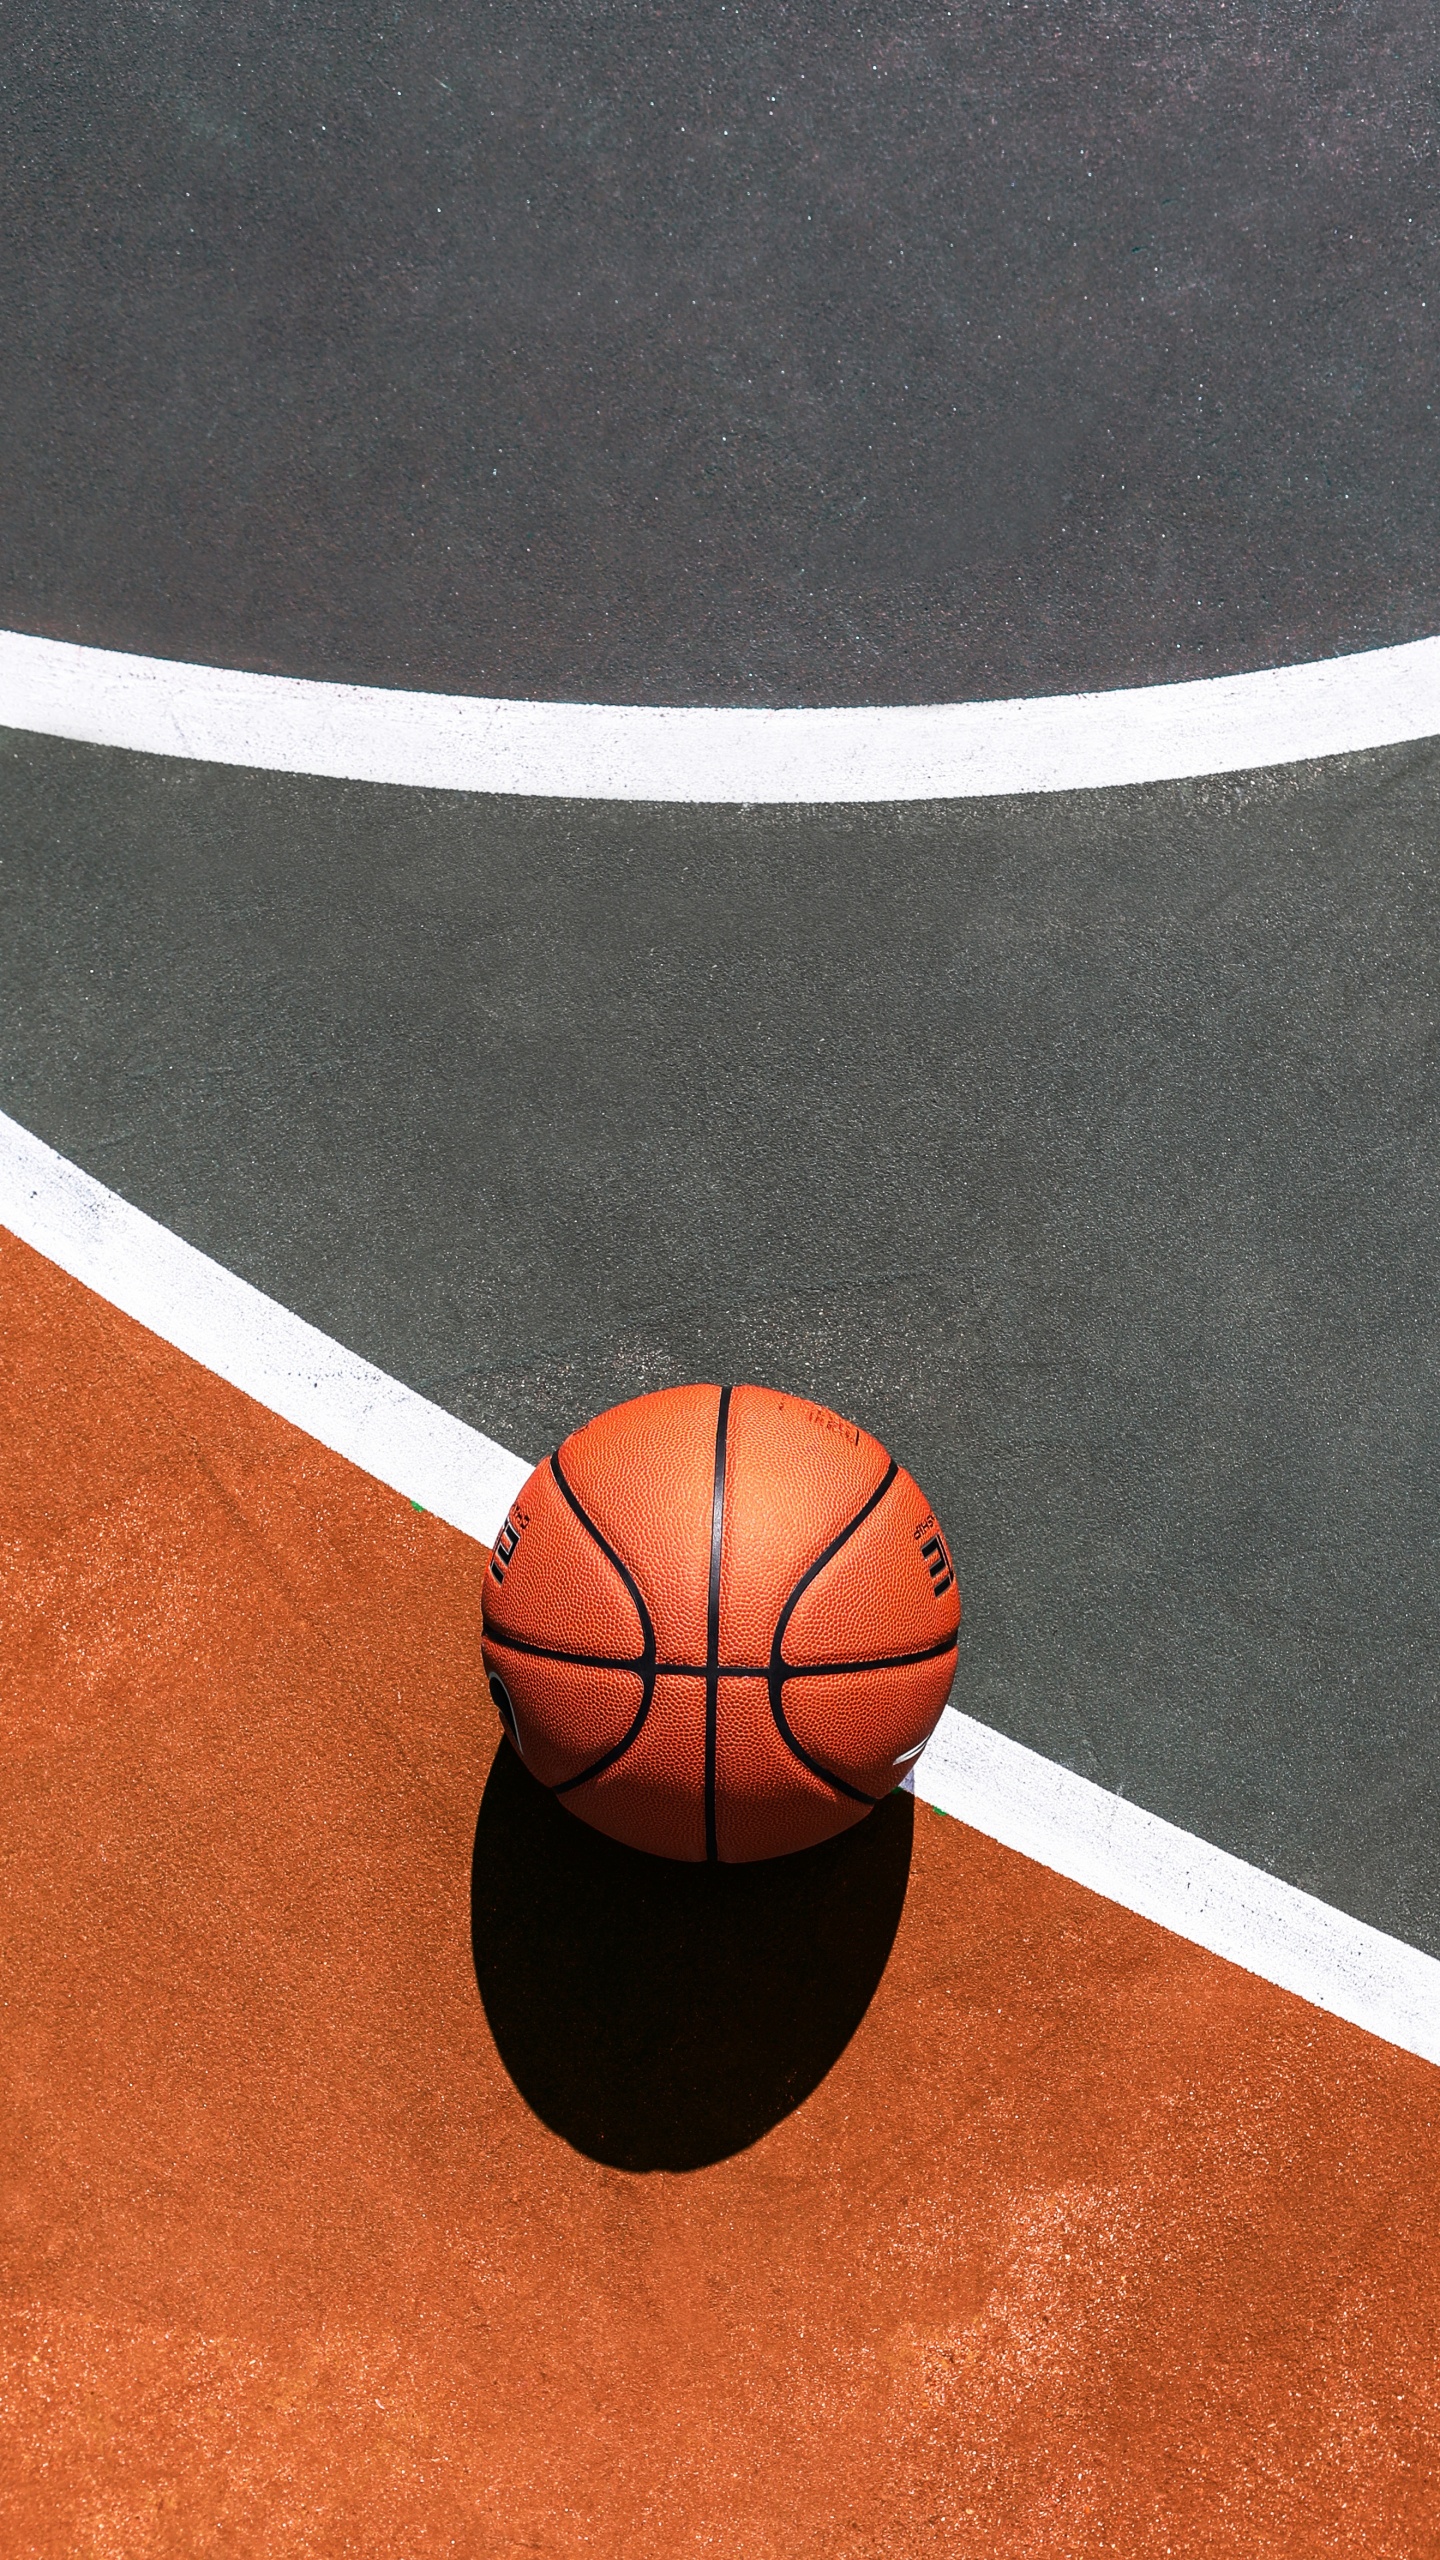 篮球, 篮球场, 运动场地, 球, 团队运动 壁纸 1440x2560 允许